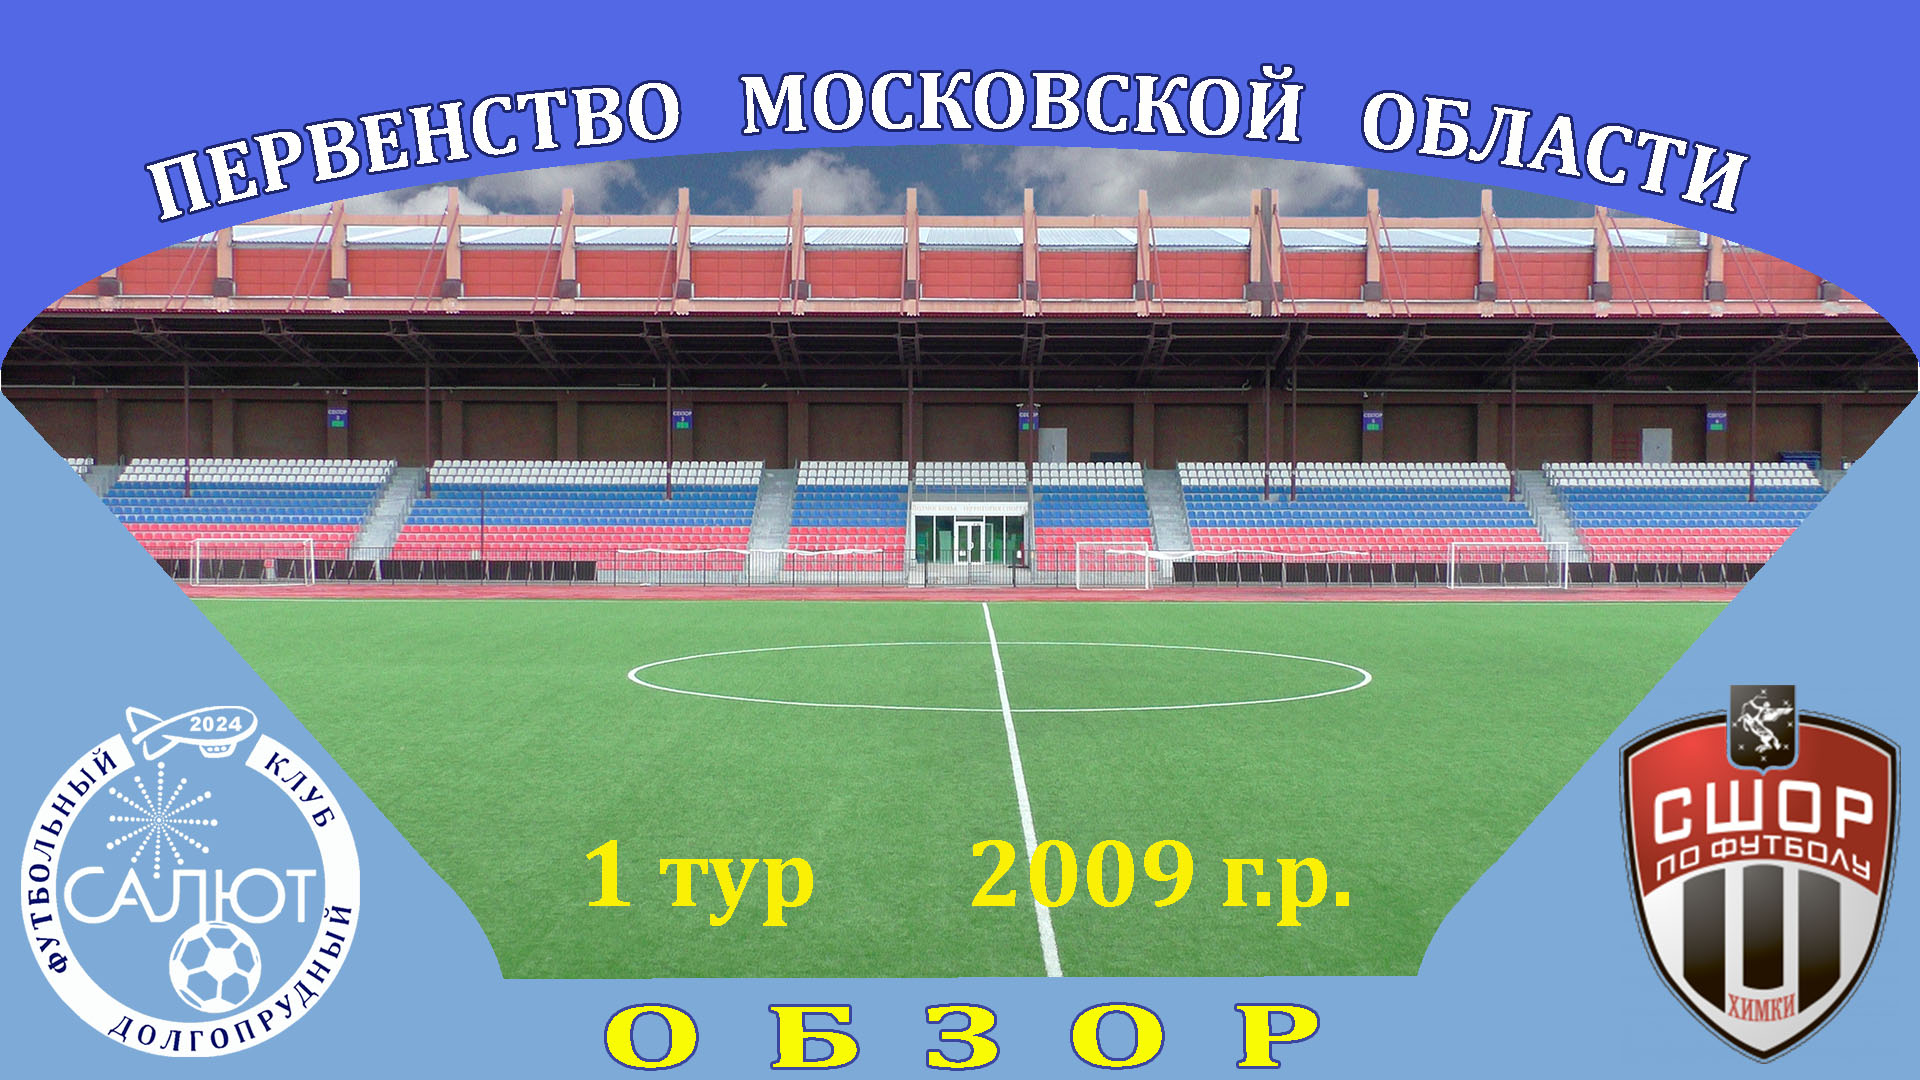 Обзор игры  ФСК Салют 2009  9-0  СШОР Сходня